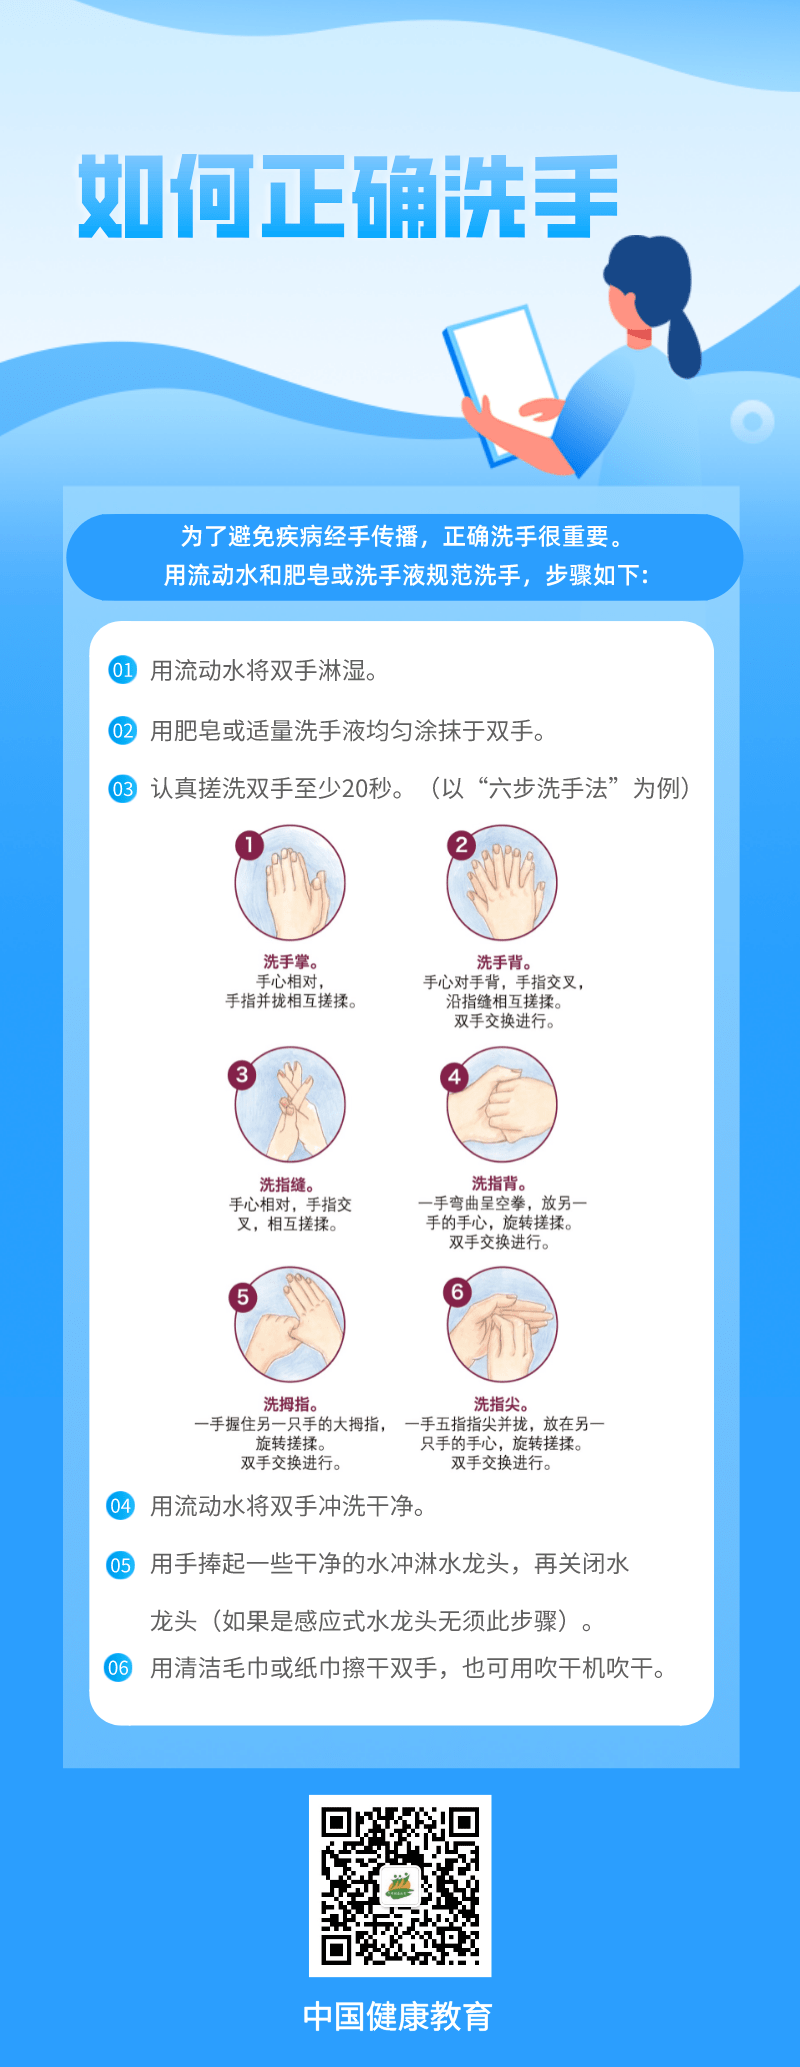 健康科普丨如何正确洗手教育来源中国 3417